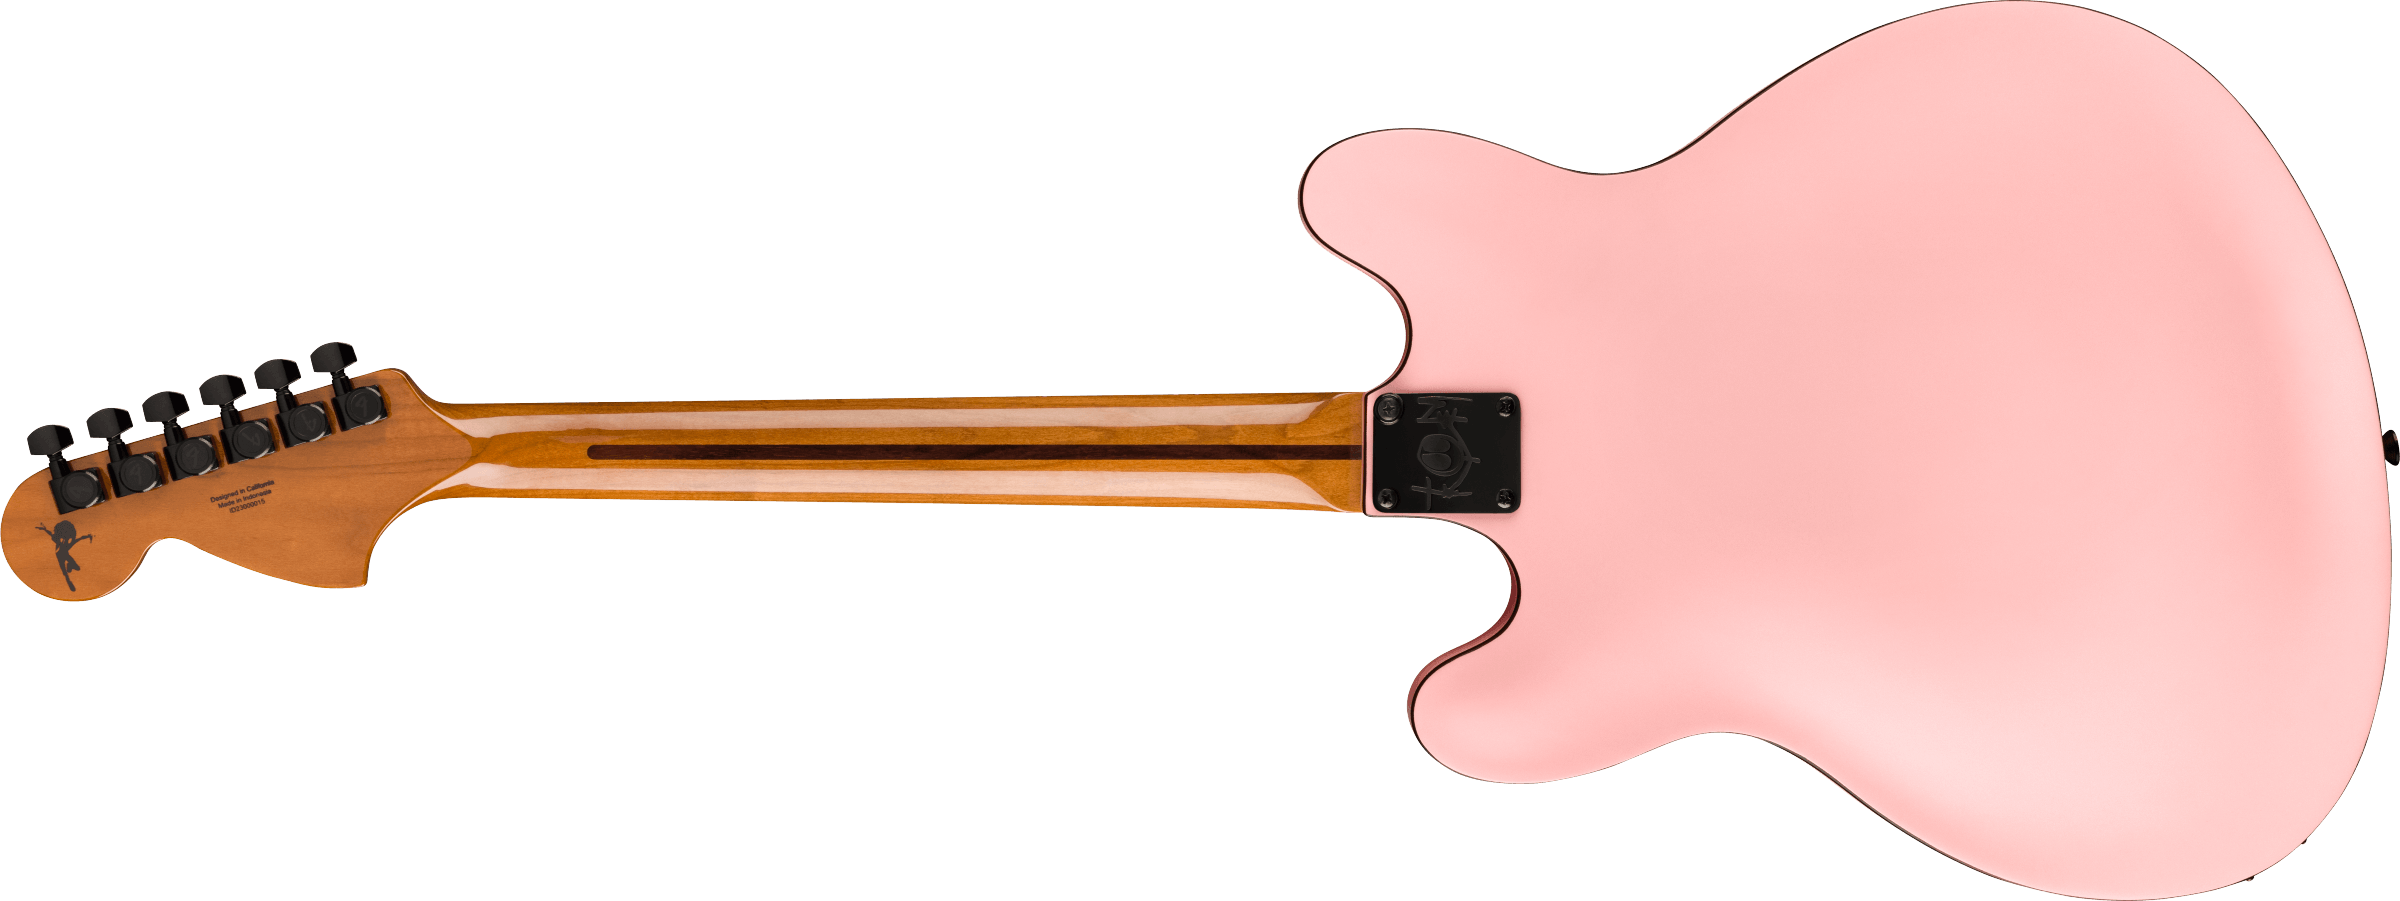 Fender Tom DeLonge Starcaster Rosewood Fingerboard, Black Hardware, Satin Shell Pink 0262370556